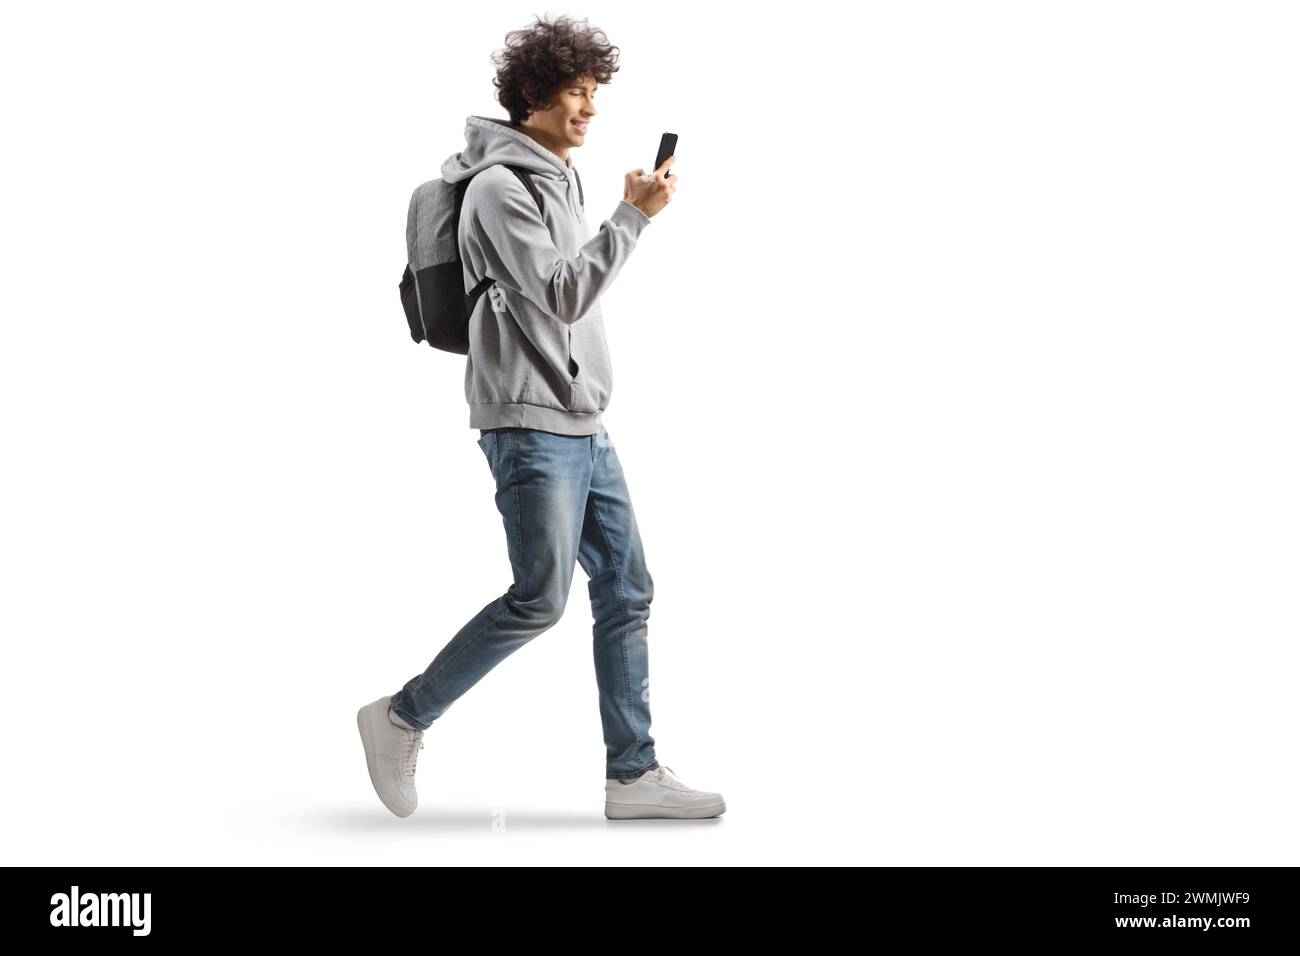 Étudiant portant un sac à dos et marchant avec un smartphone dans ses mains isolé sur fond blanc Banque D'Images